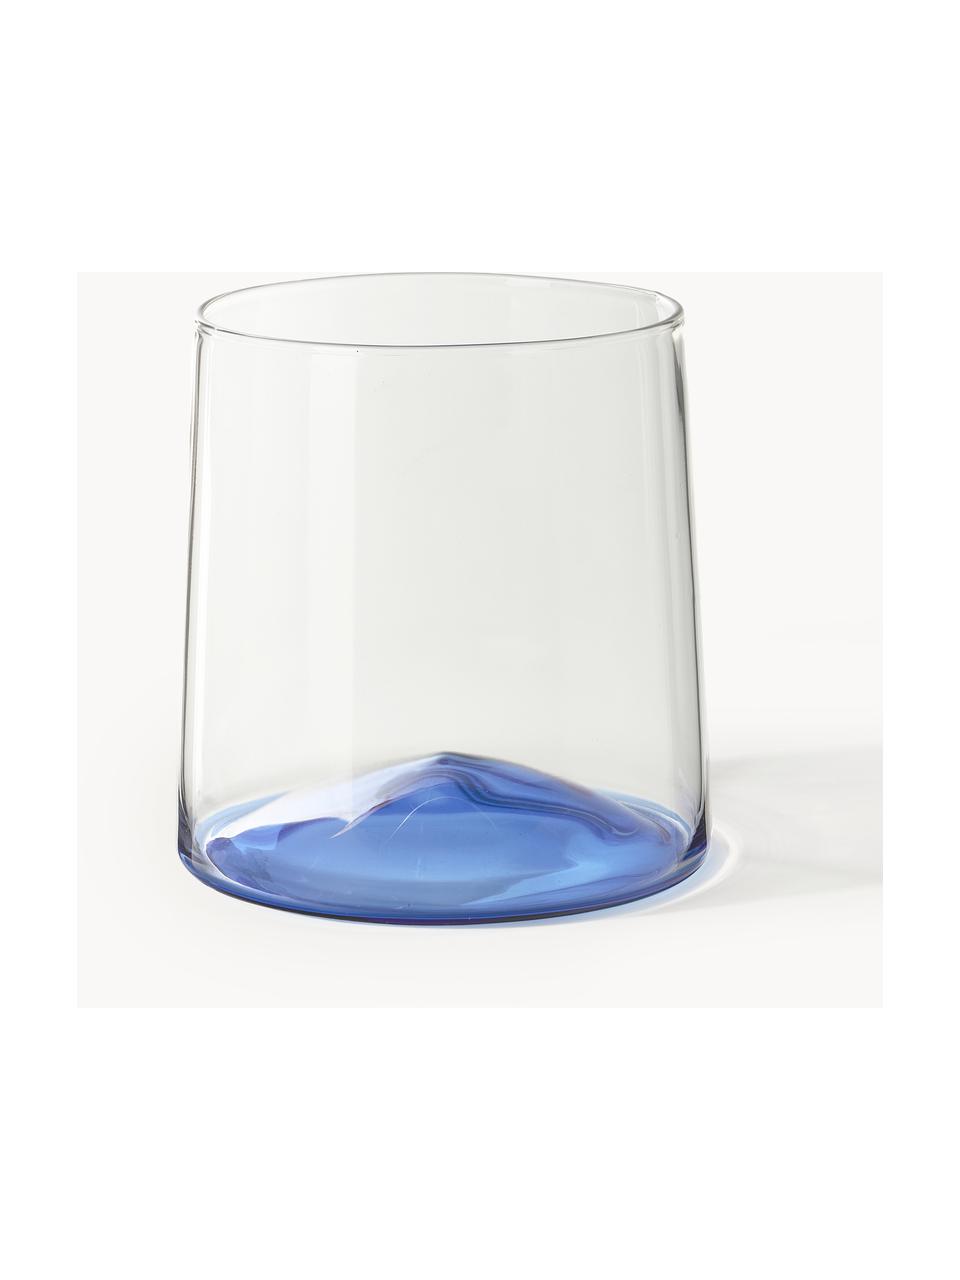 Bicchieri per acqua in vetro soffiato Hadley 4 pz, Vetro borosilicato soffiato

Scopri la versatilità delle stoviglie in vetro borosilicato per la tua casa! 
Il vetro borosilicato è un materiale di alta qualità, affidabile e robusto. È caratterizzato da un'eccezionale resistenza al calore e può quindi sopportare temperature estreme. È quindi particolarmente adatto per le bevande calde. Rispetto al vetro tradizionale, il vetro borosilicato è più resistente alla rottura e alle incrinature grazie alla sua composizione e struttura., Trasparente, blu, Ø 9 x Alt. 10 cm, 400 ml